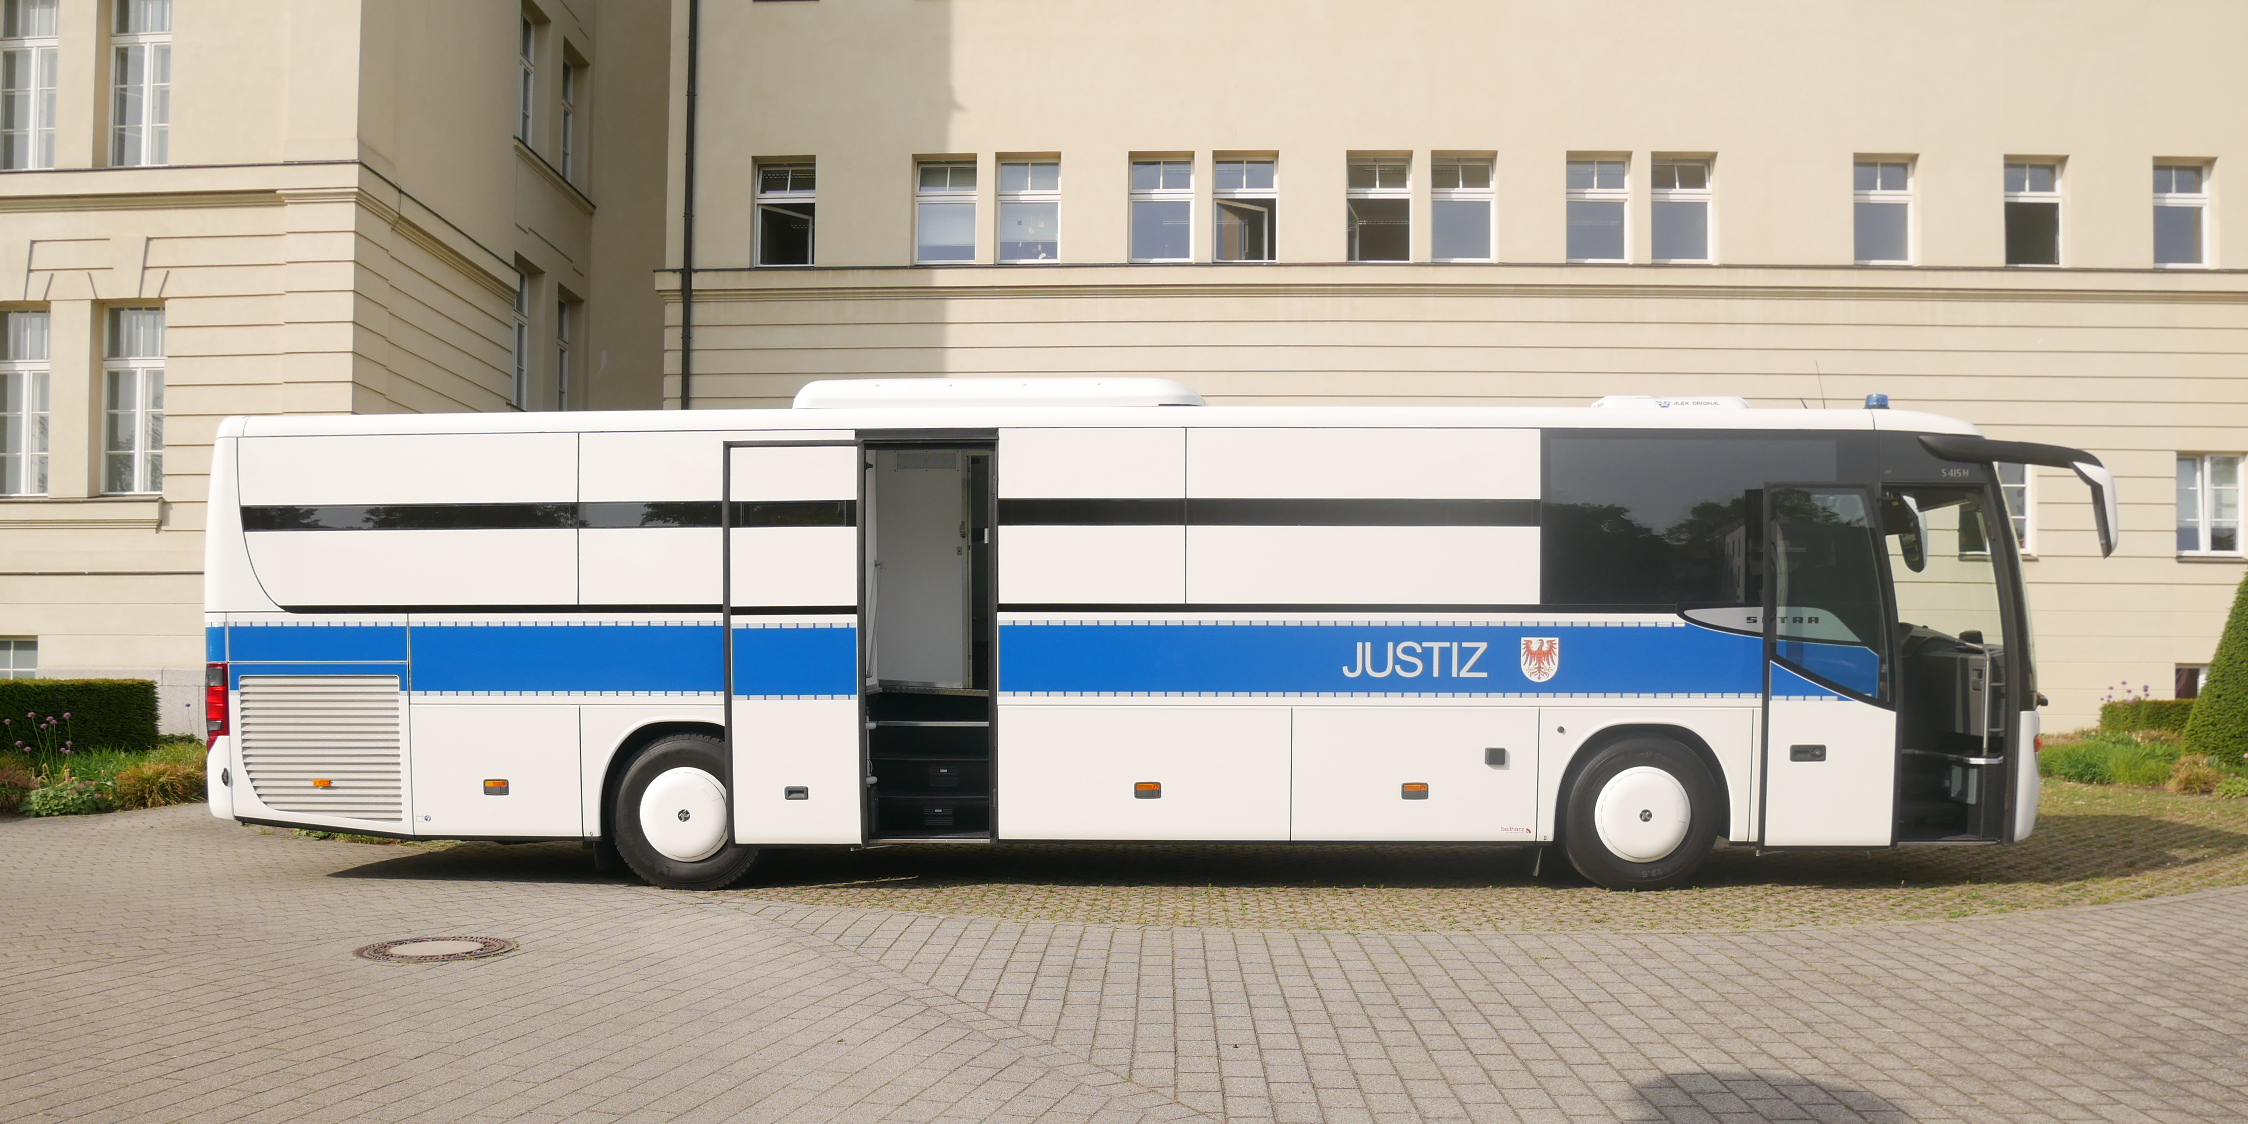 Abbildung des Gefangenentransportomnibus